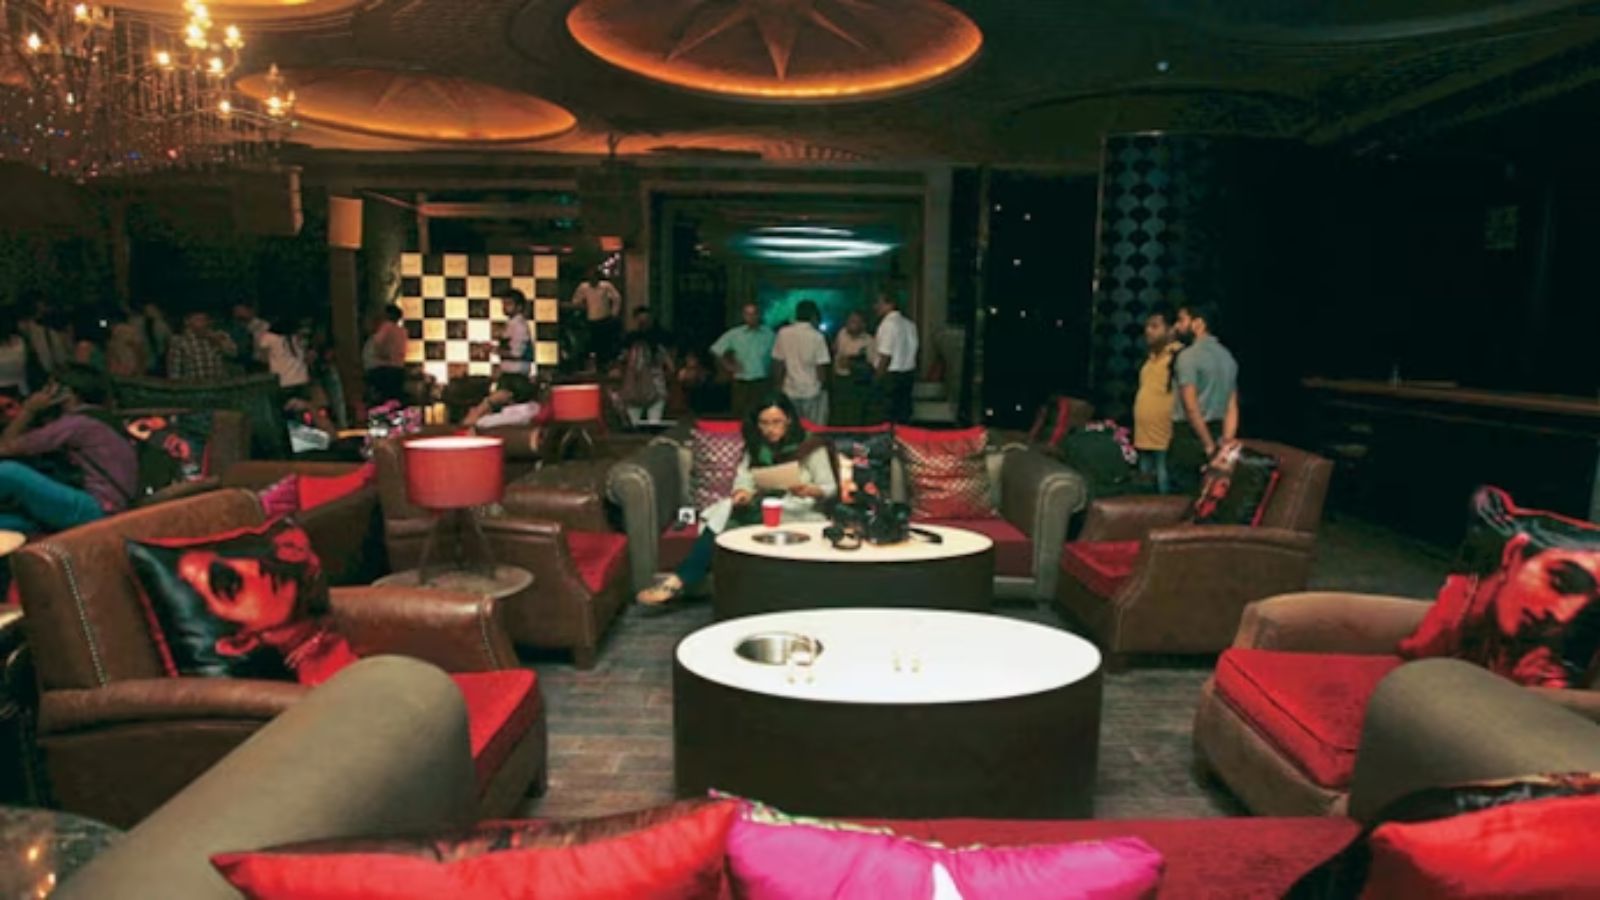 Lap, The Lounge, by Arjun Rampal